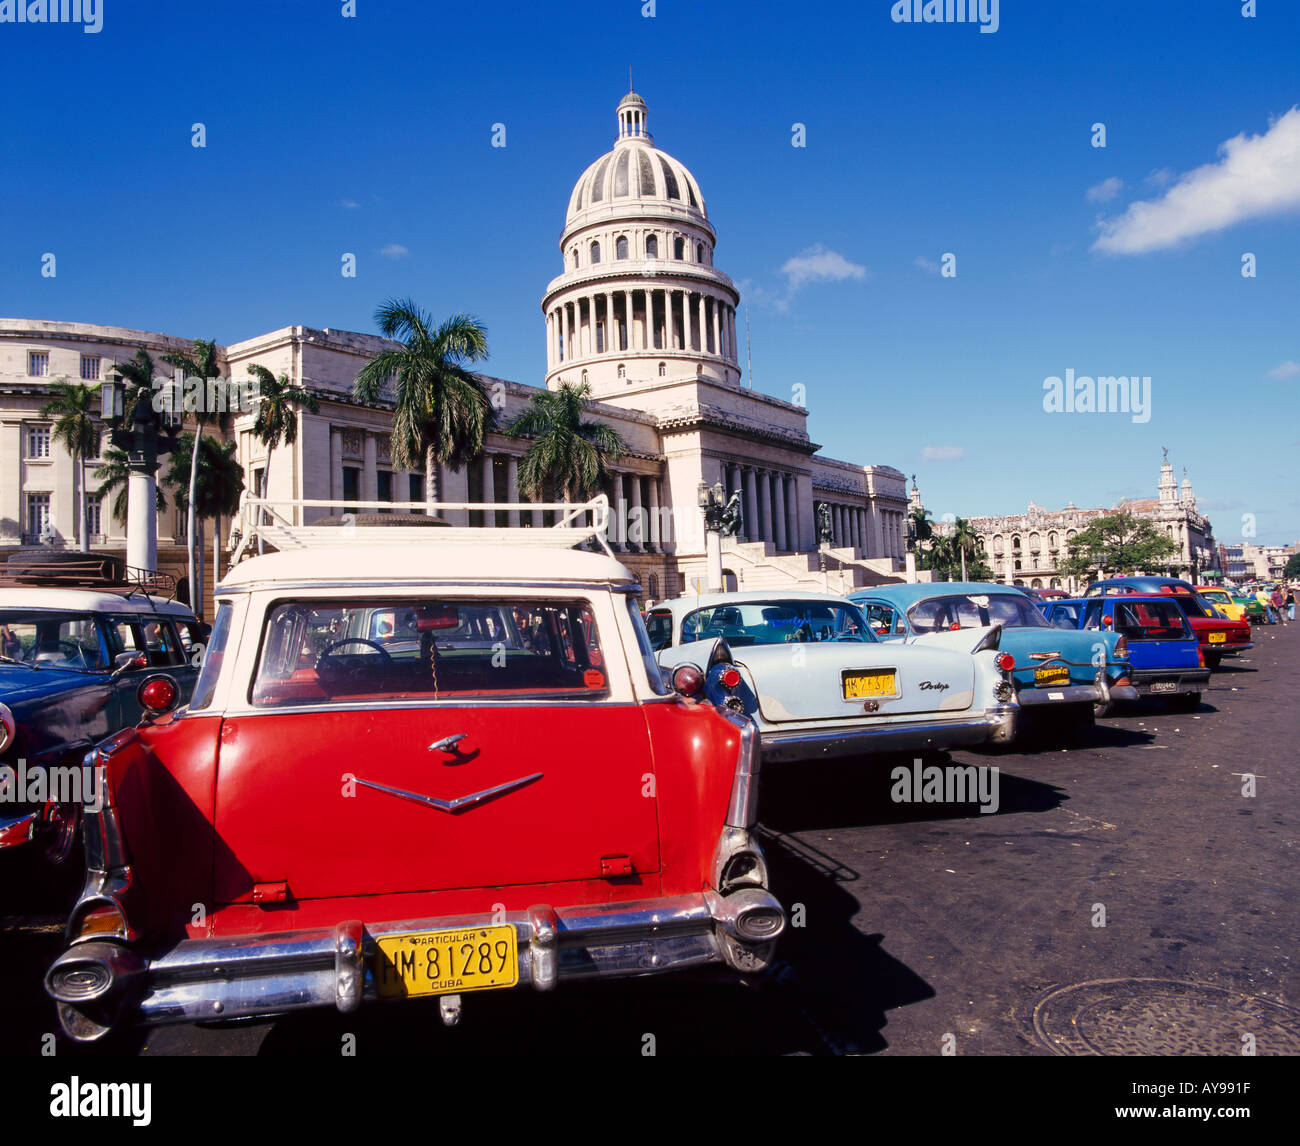 Straßenszene von Taxis geparkt neben dem Capitolio Gebäude im zentralen Havanna Kuba West Indies Stockfoto